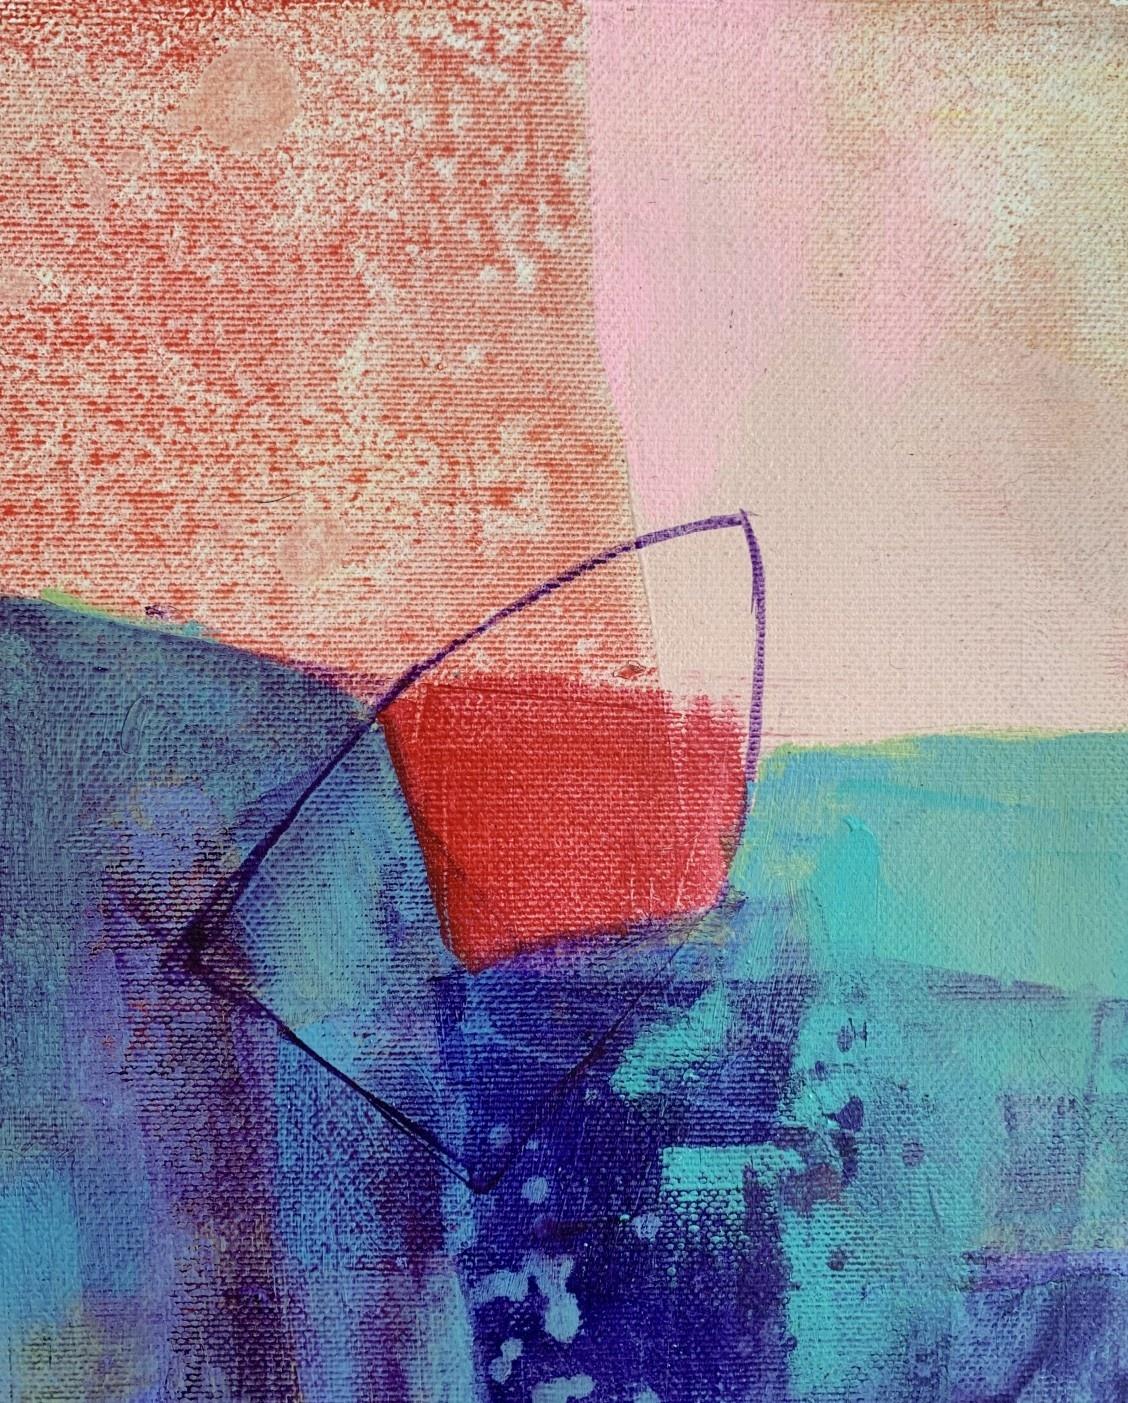 Türkisfarbener Ufer – zeitgenössische abstrakte Malerei Acrylfarben, polnischer Künstler – Painting von Anna Masiul-Gozdecka